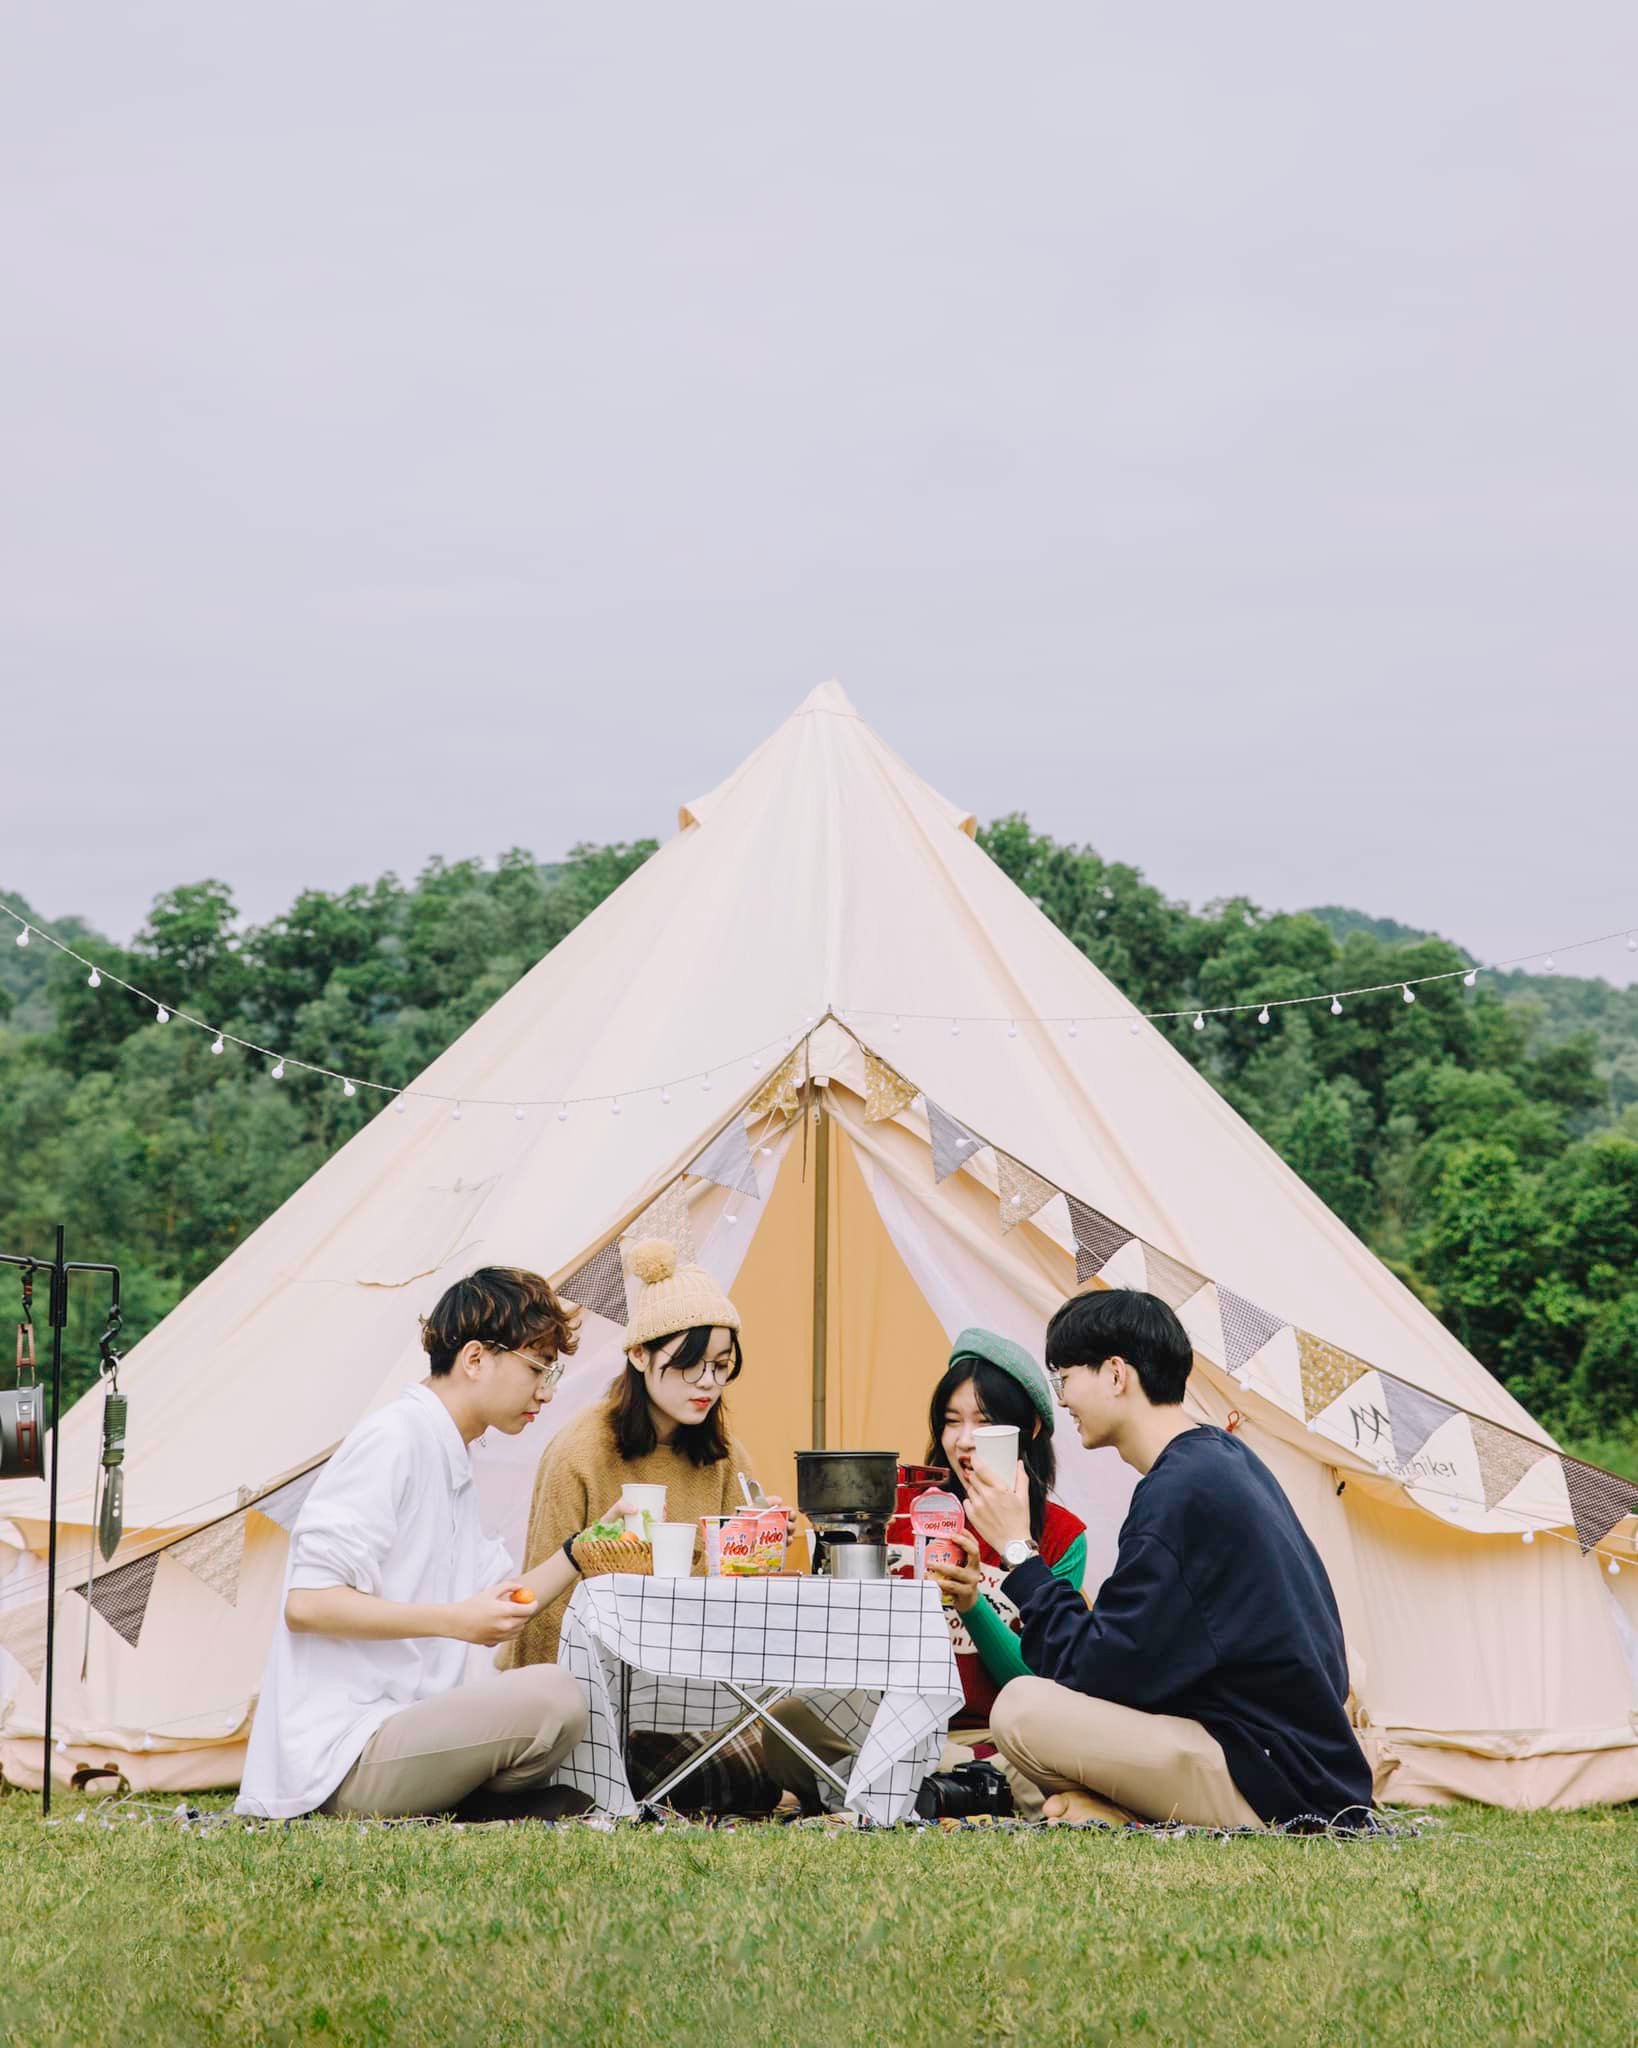 Nếu muốn cắm trại qua đêm tại hồ Chòm Núi, du khách nên chuẩn bị trước lều, trại, đèn và đồ ăn. Ảnh: Bùi Quang Thụy